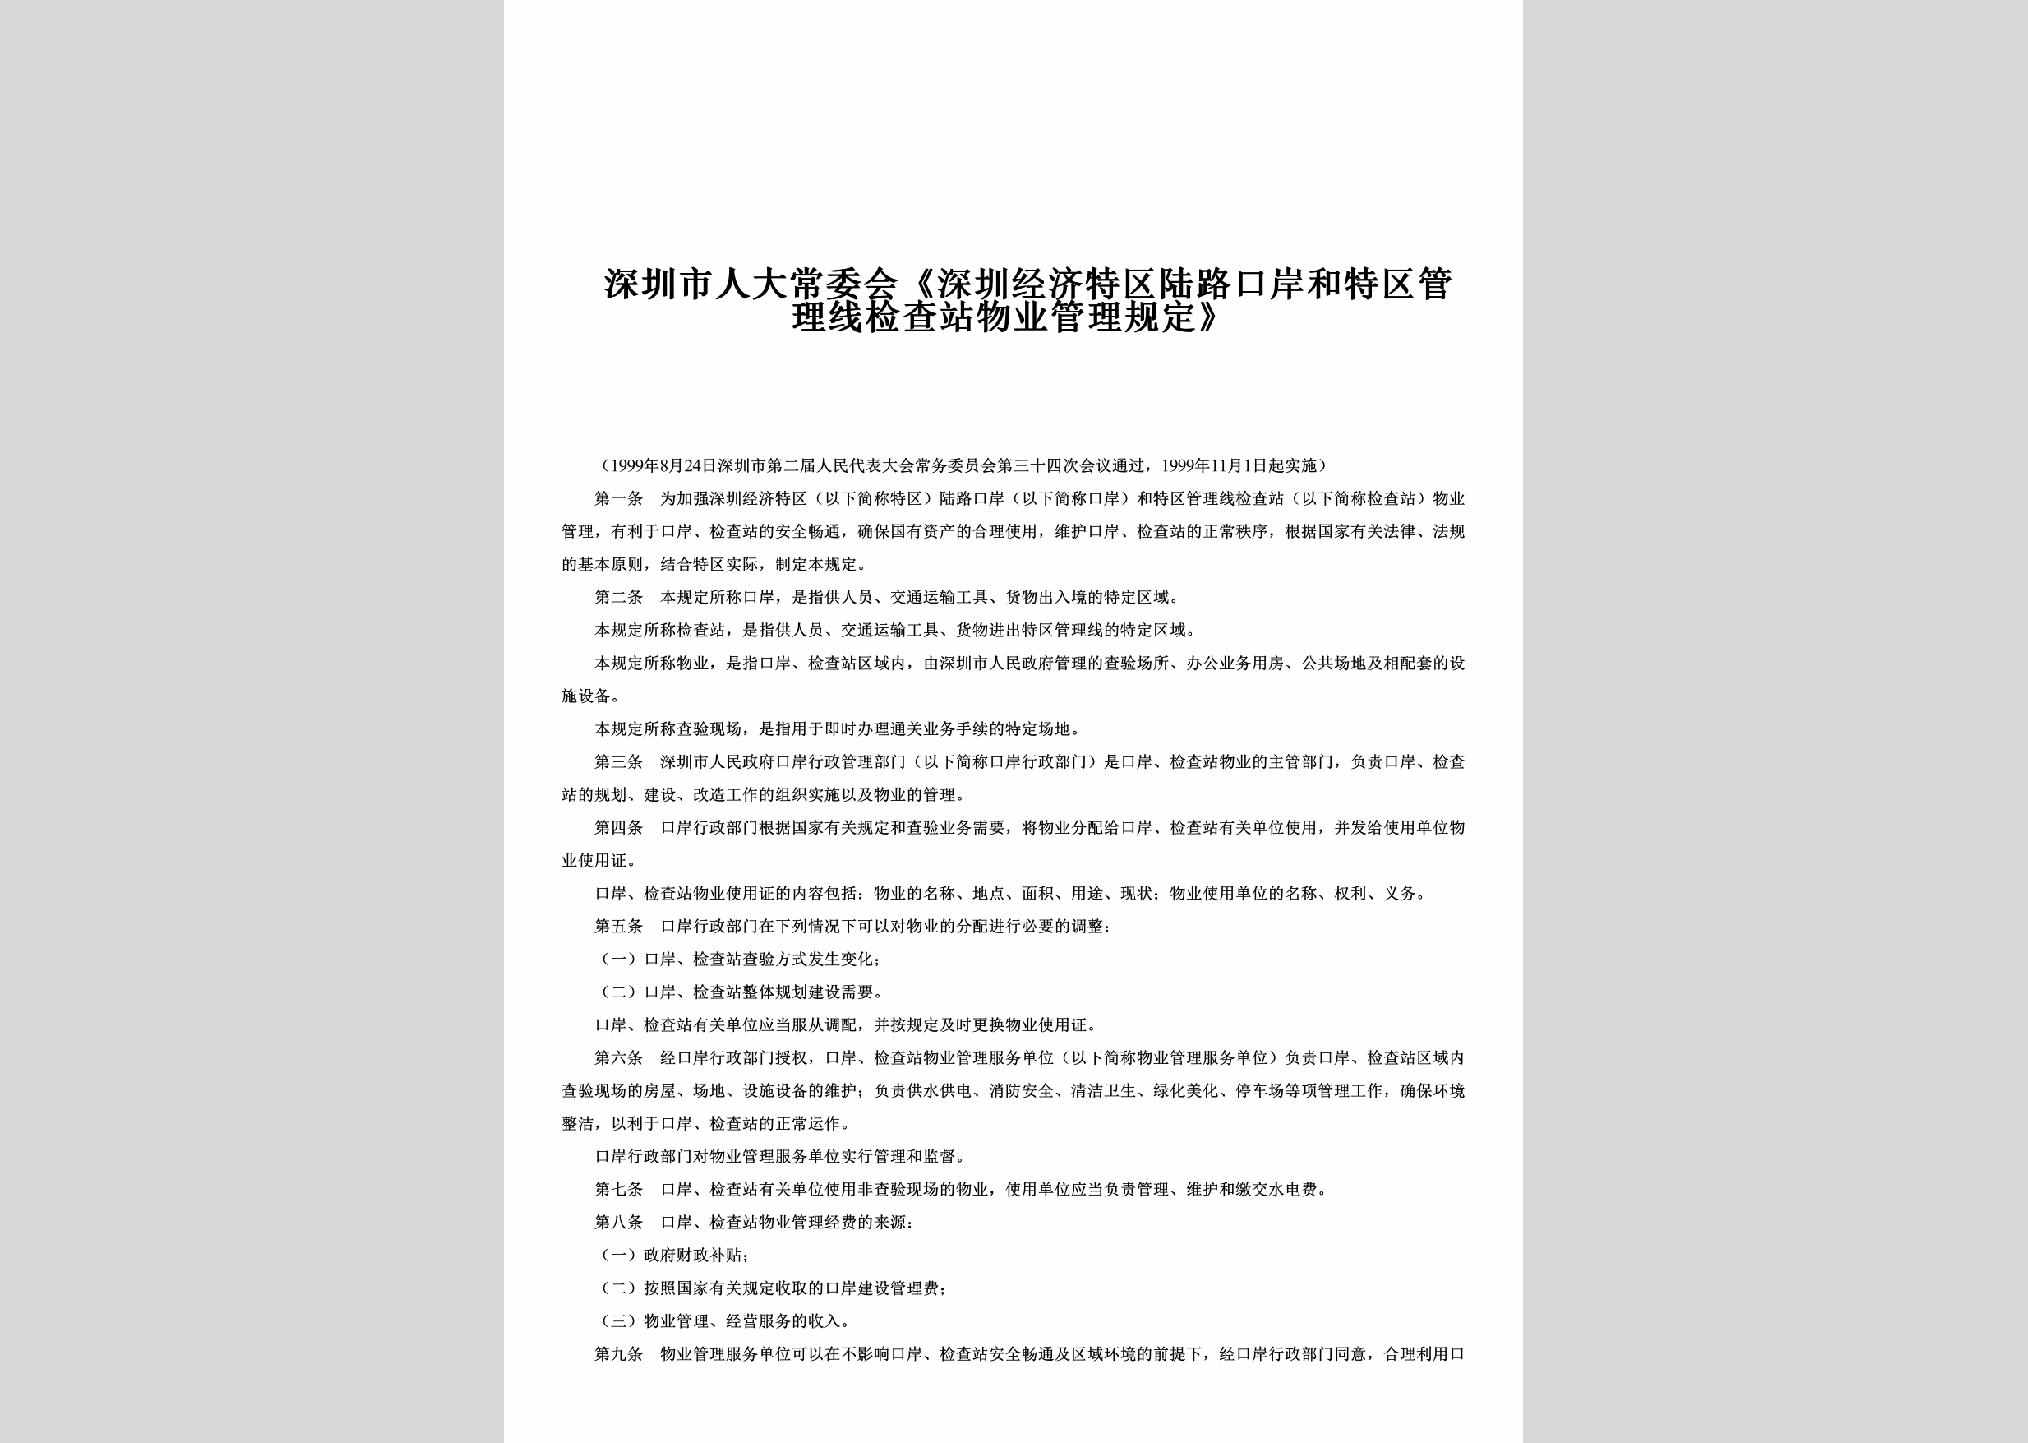 GD-SZTQWGGD-1999：《深圳经济特区陆路口岸和特区管理线检查站物业管理规定》